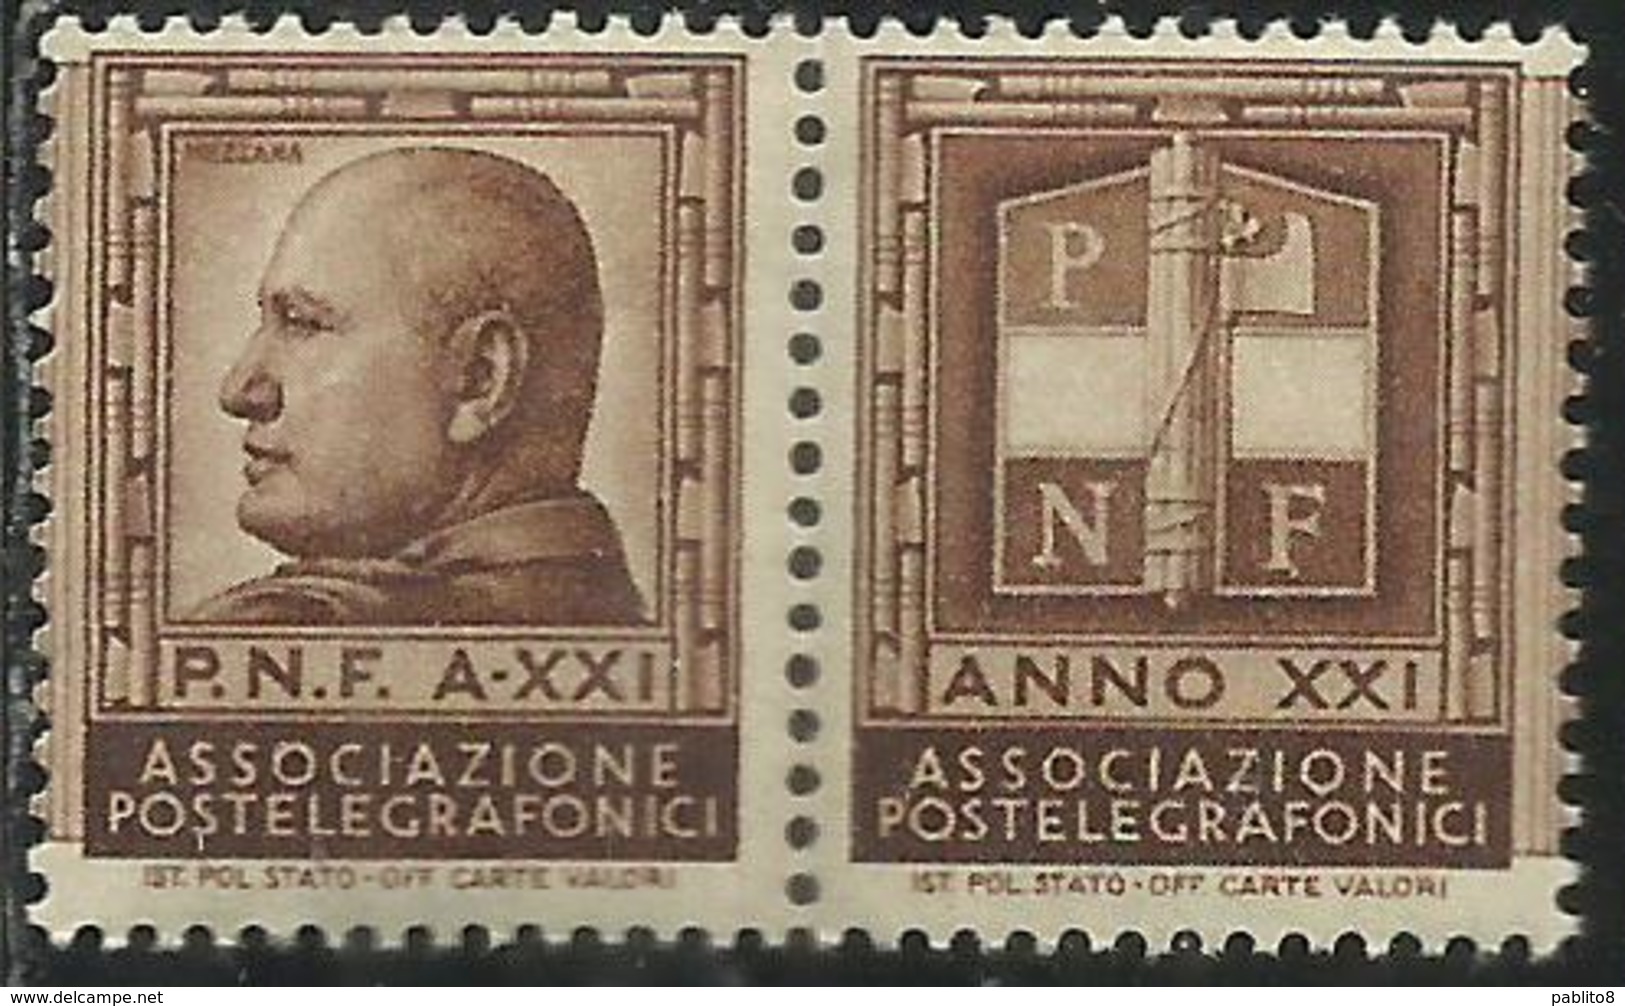 ITALY KINGDOM ITALIA REGNO 1921 ASSOCIAZIONE POSTELEGRAFONICI P.N.F. A-XXI MUSSOLINI MNH ERINNOFILO - Cinderellas